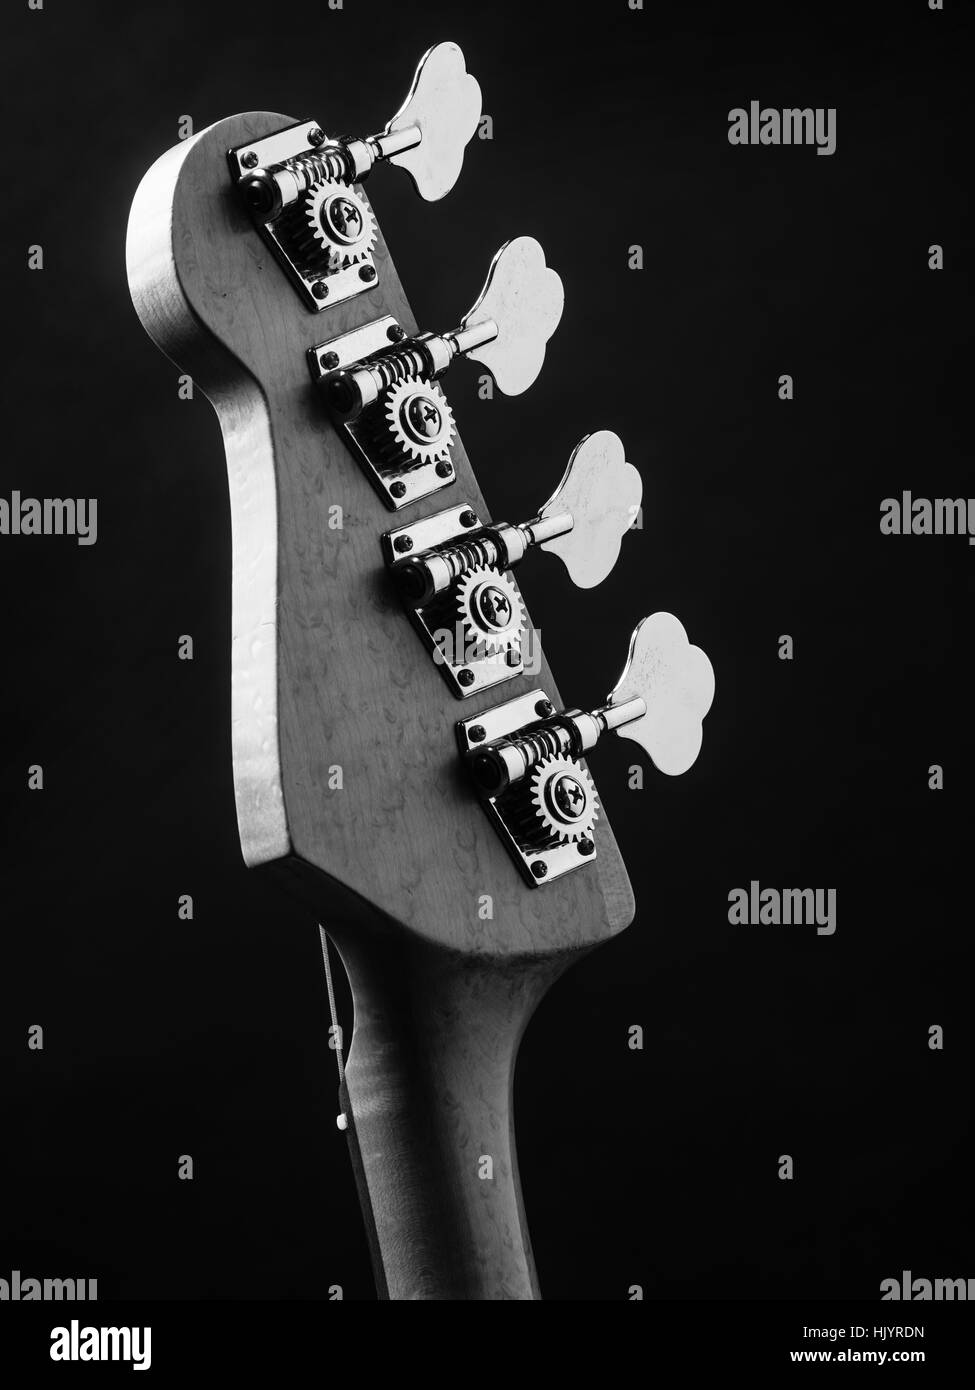 Schwarz / weiß Foto von einer Bassgitarre Kopfplatte über schwarzen Hintergrund. Stockfoto